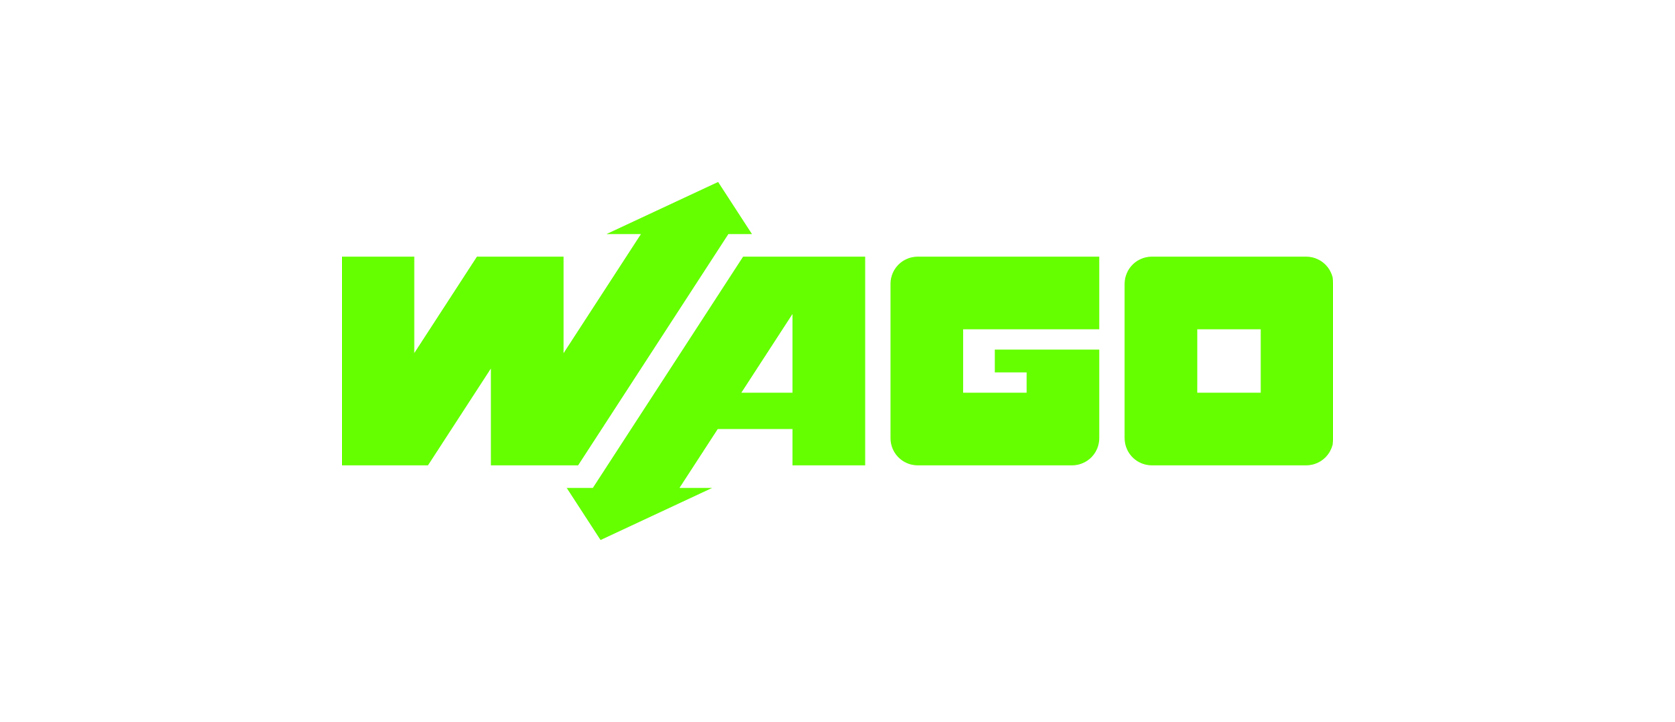  wago-logo.jpg 